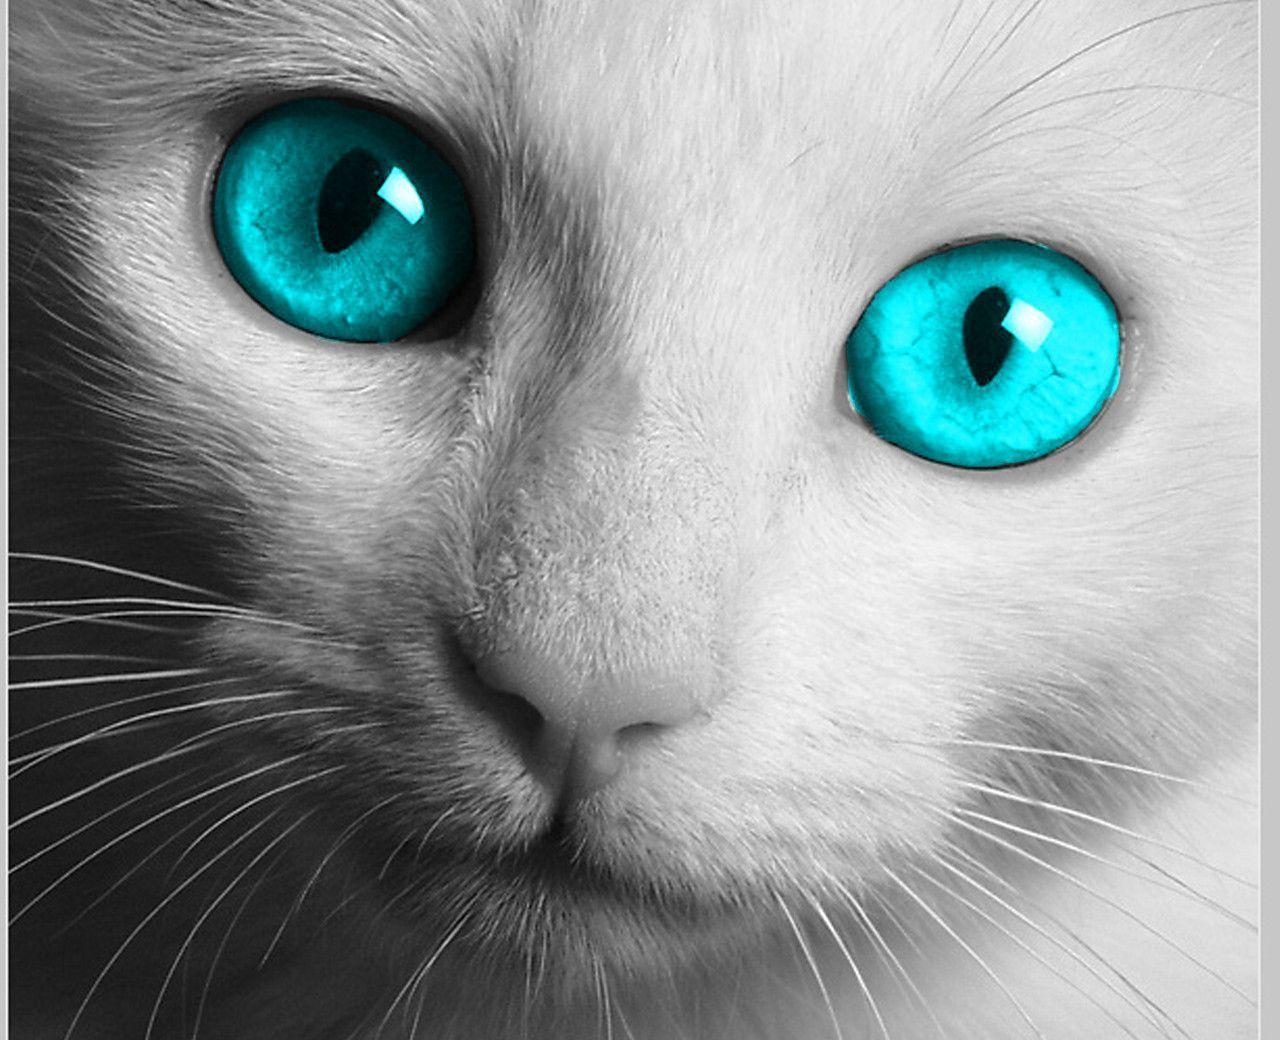 Cat Eyes Wallpaper